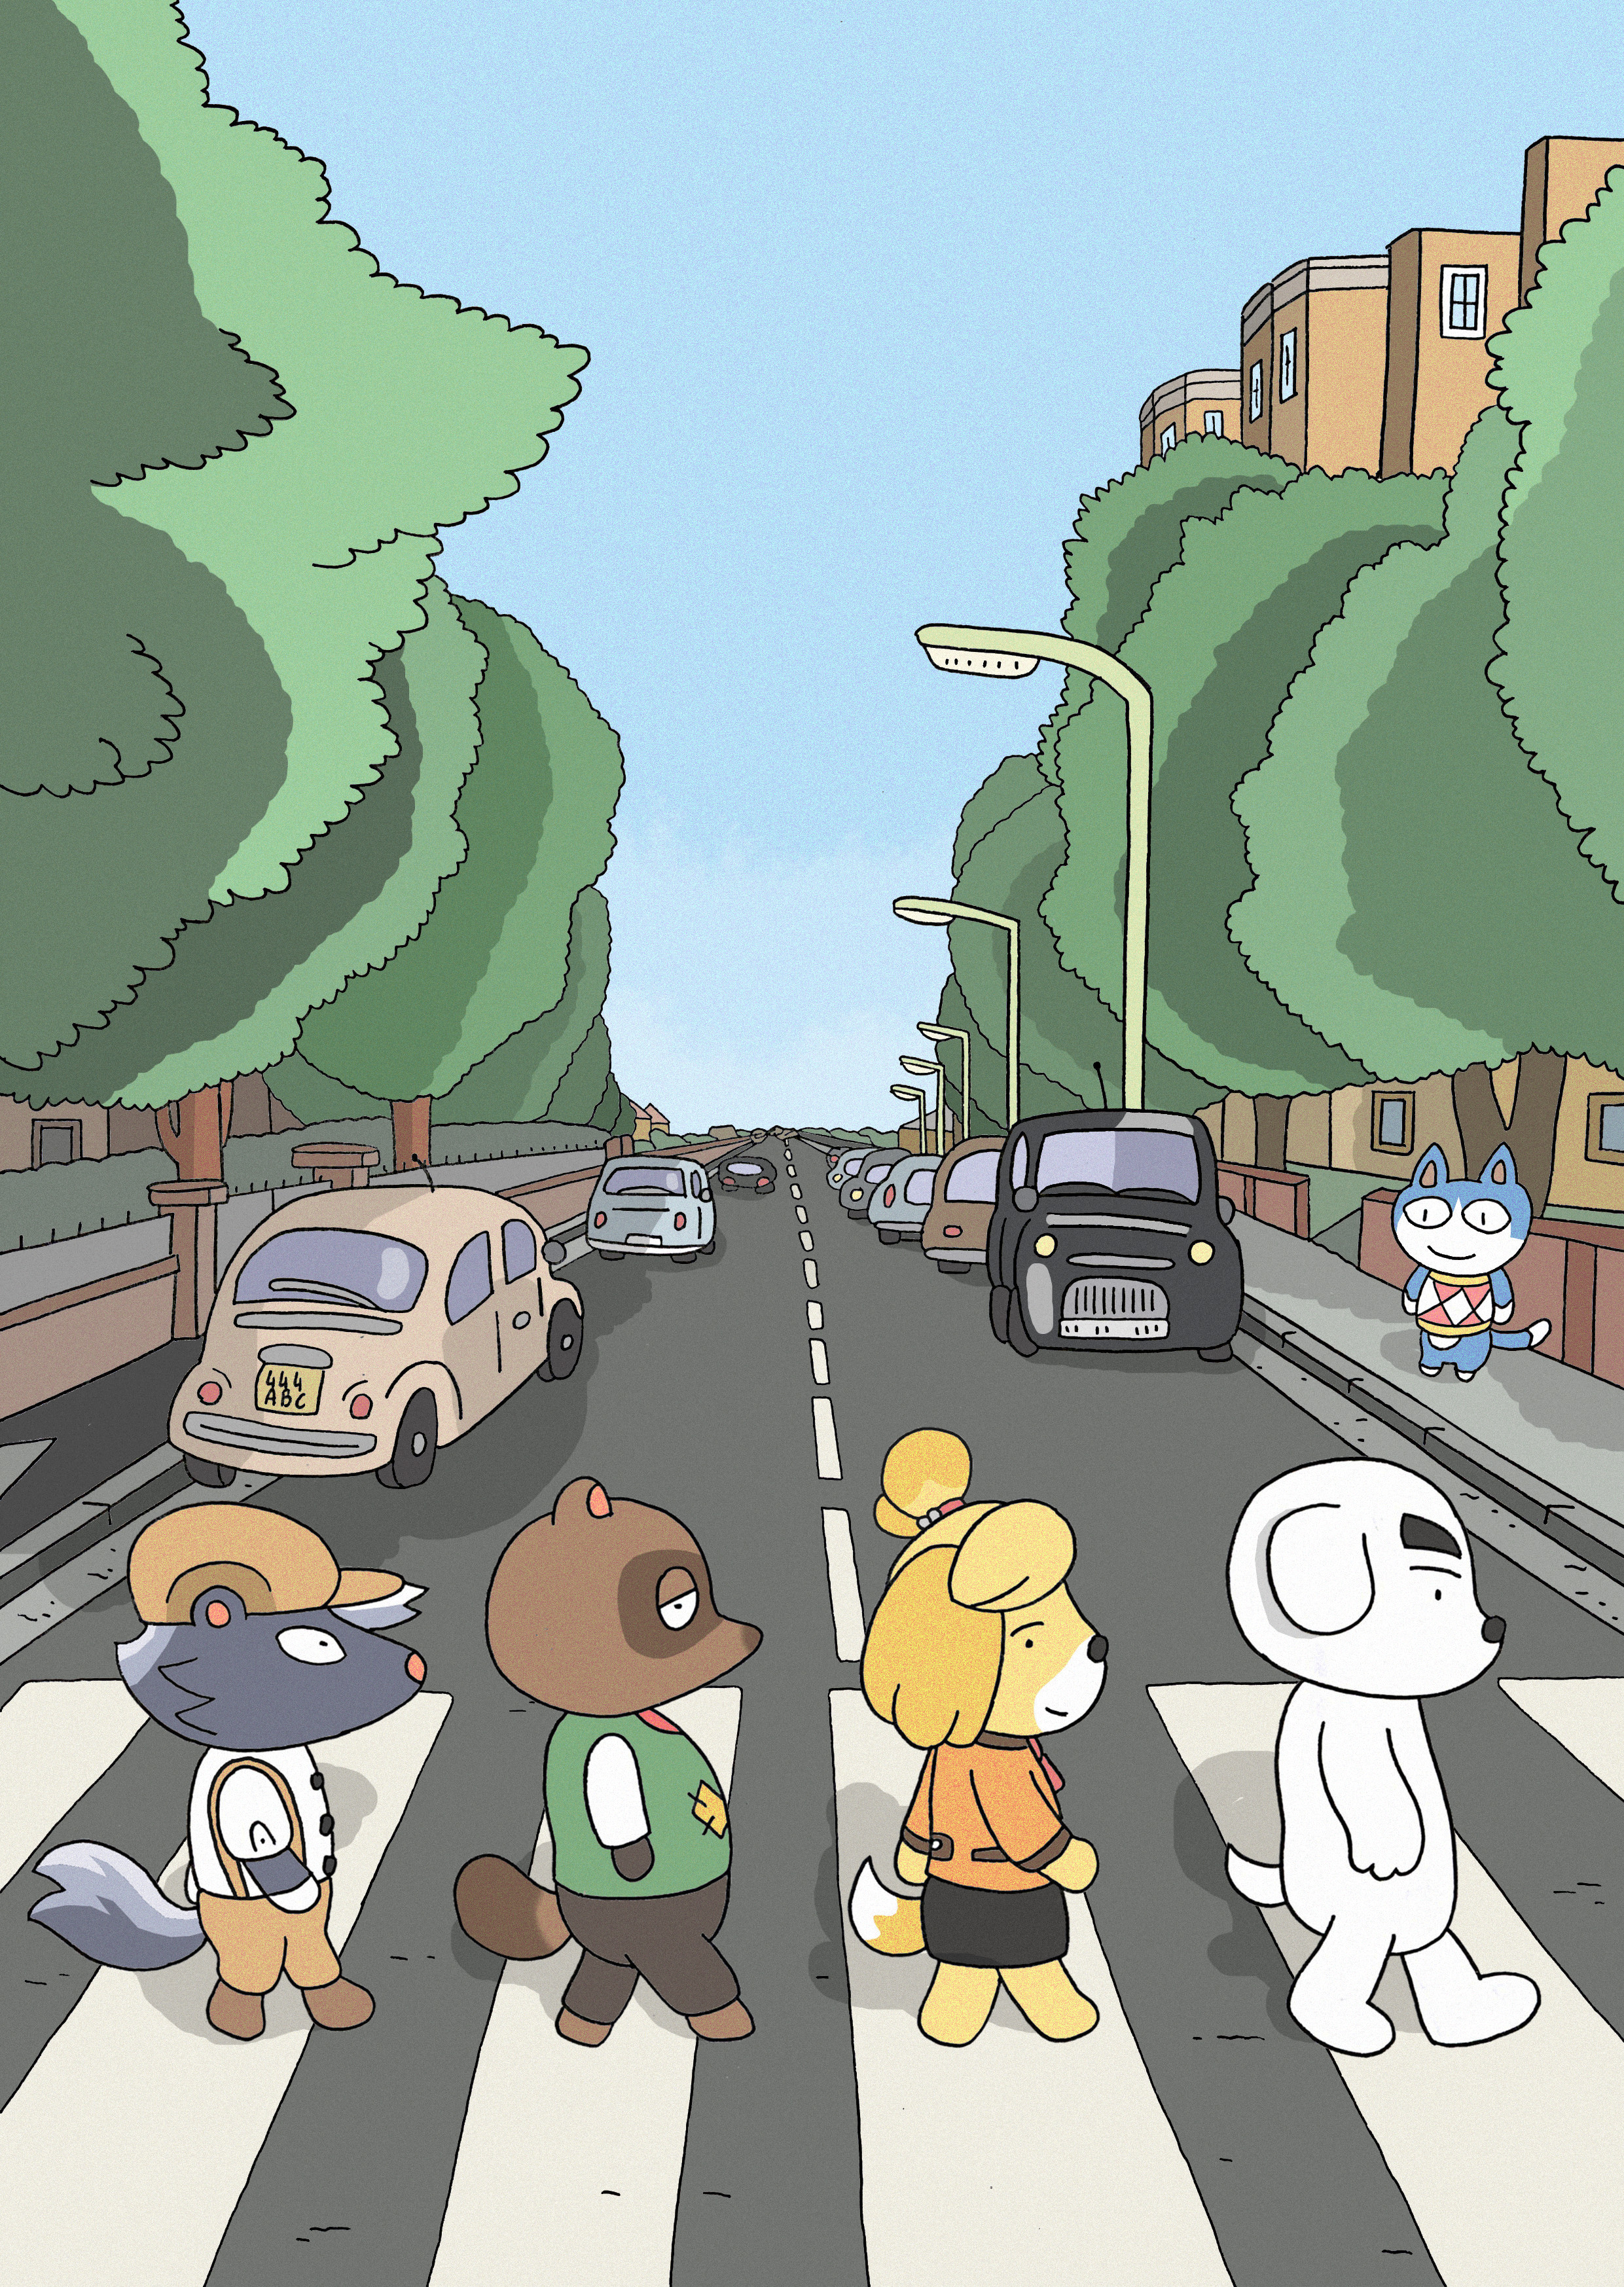 4-Abbey road